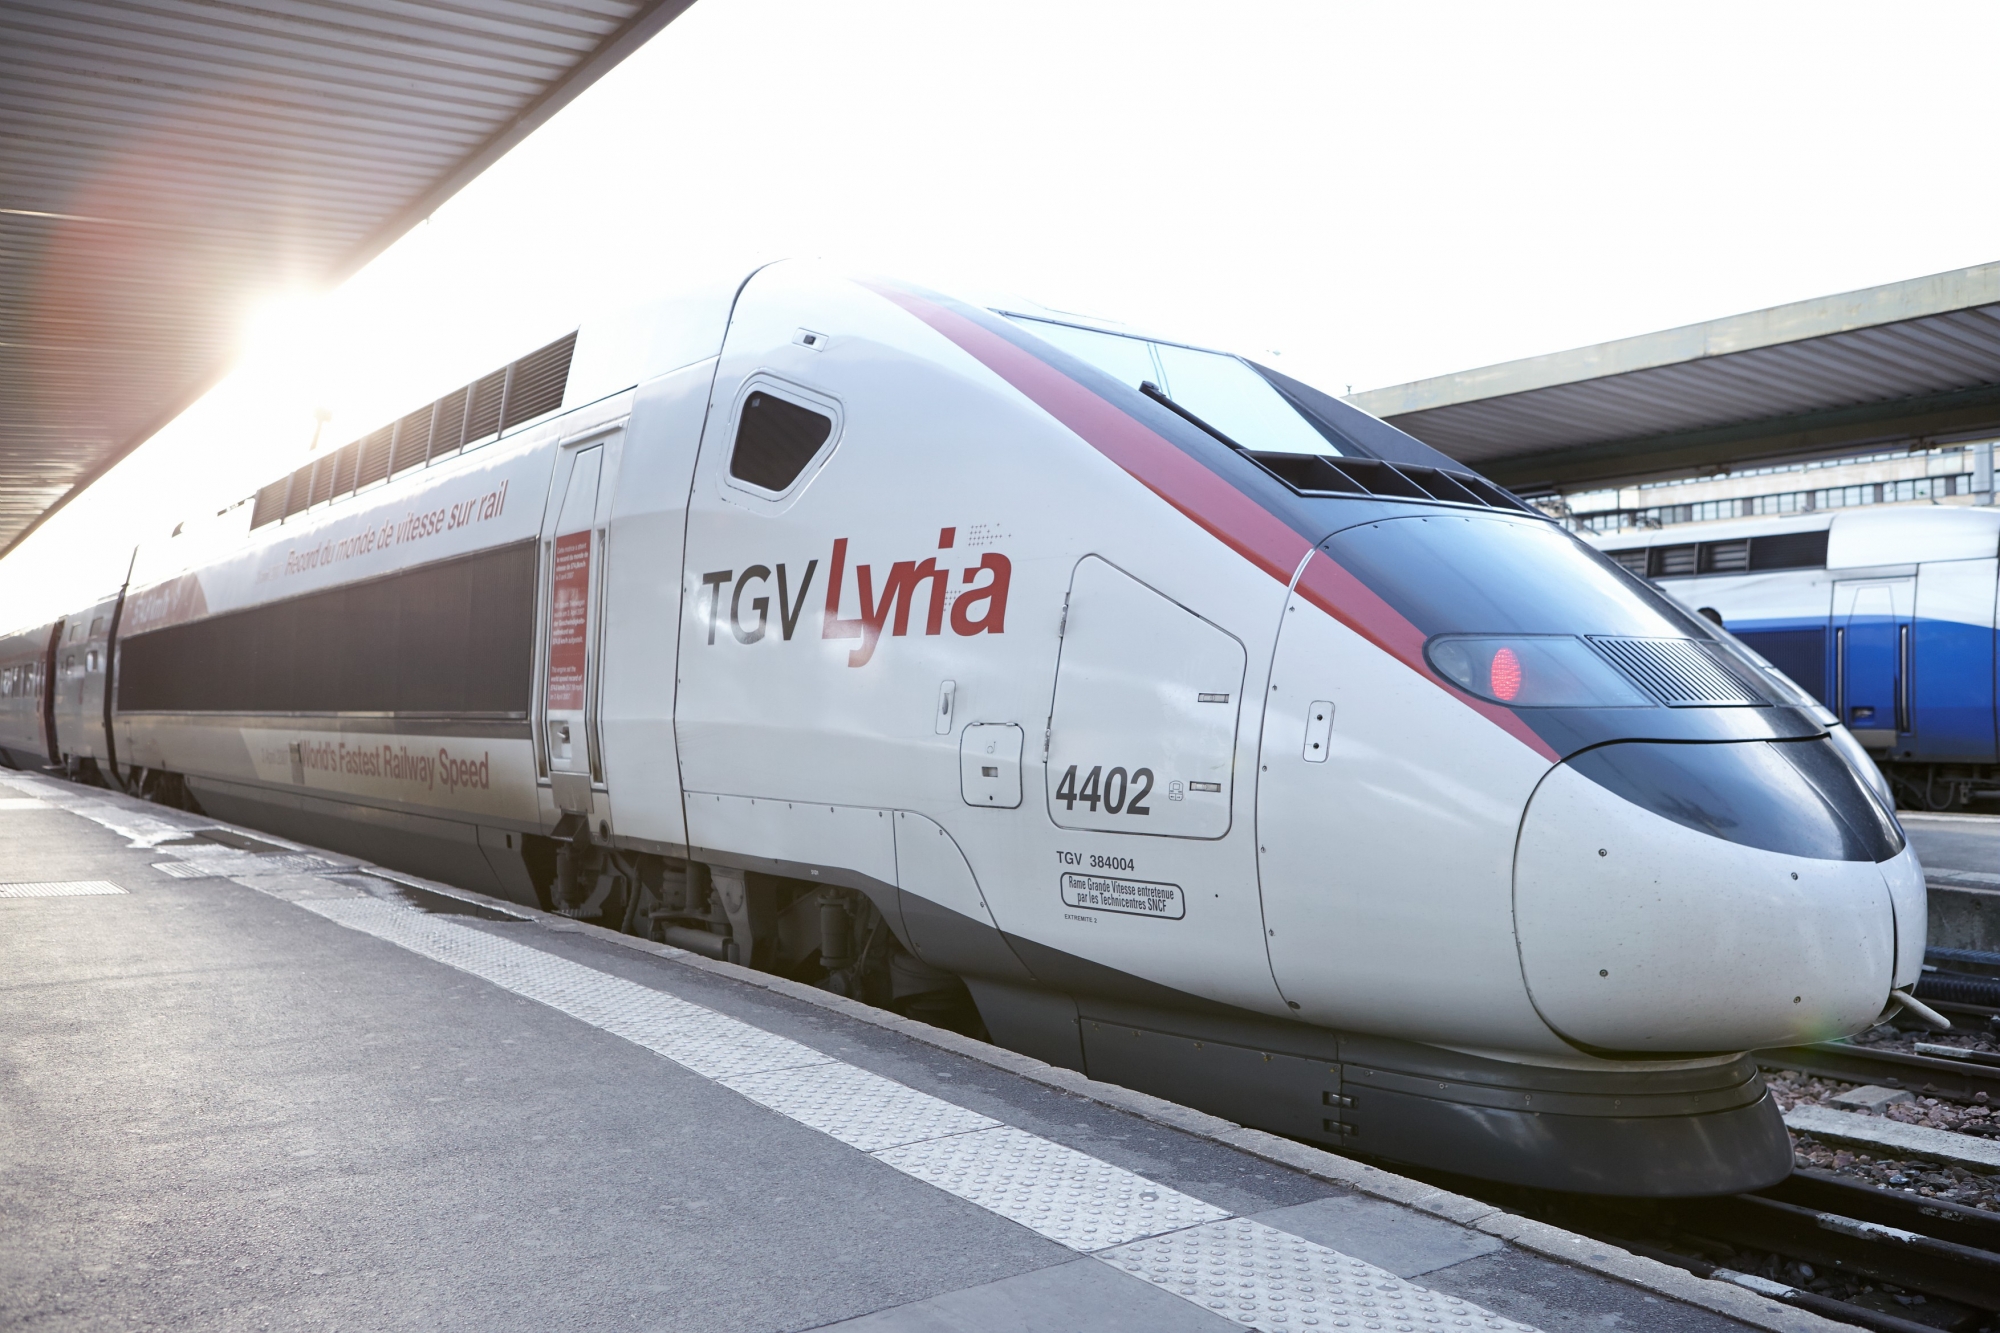 TGV Lyria a quai, a Paris Gare de Lyon.